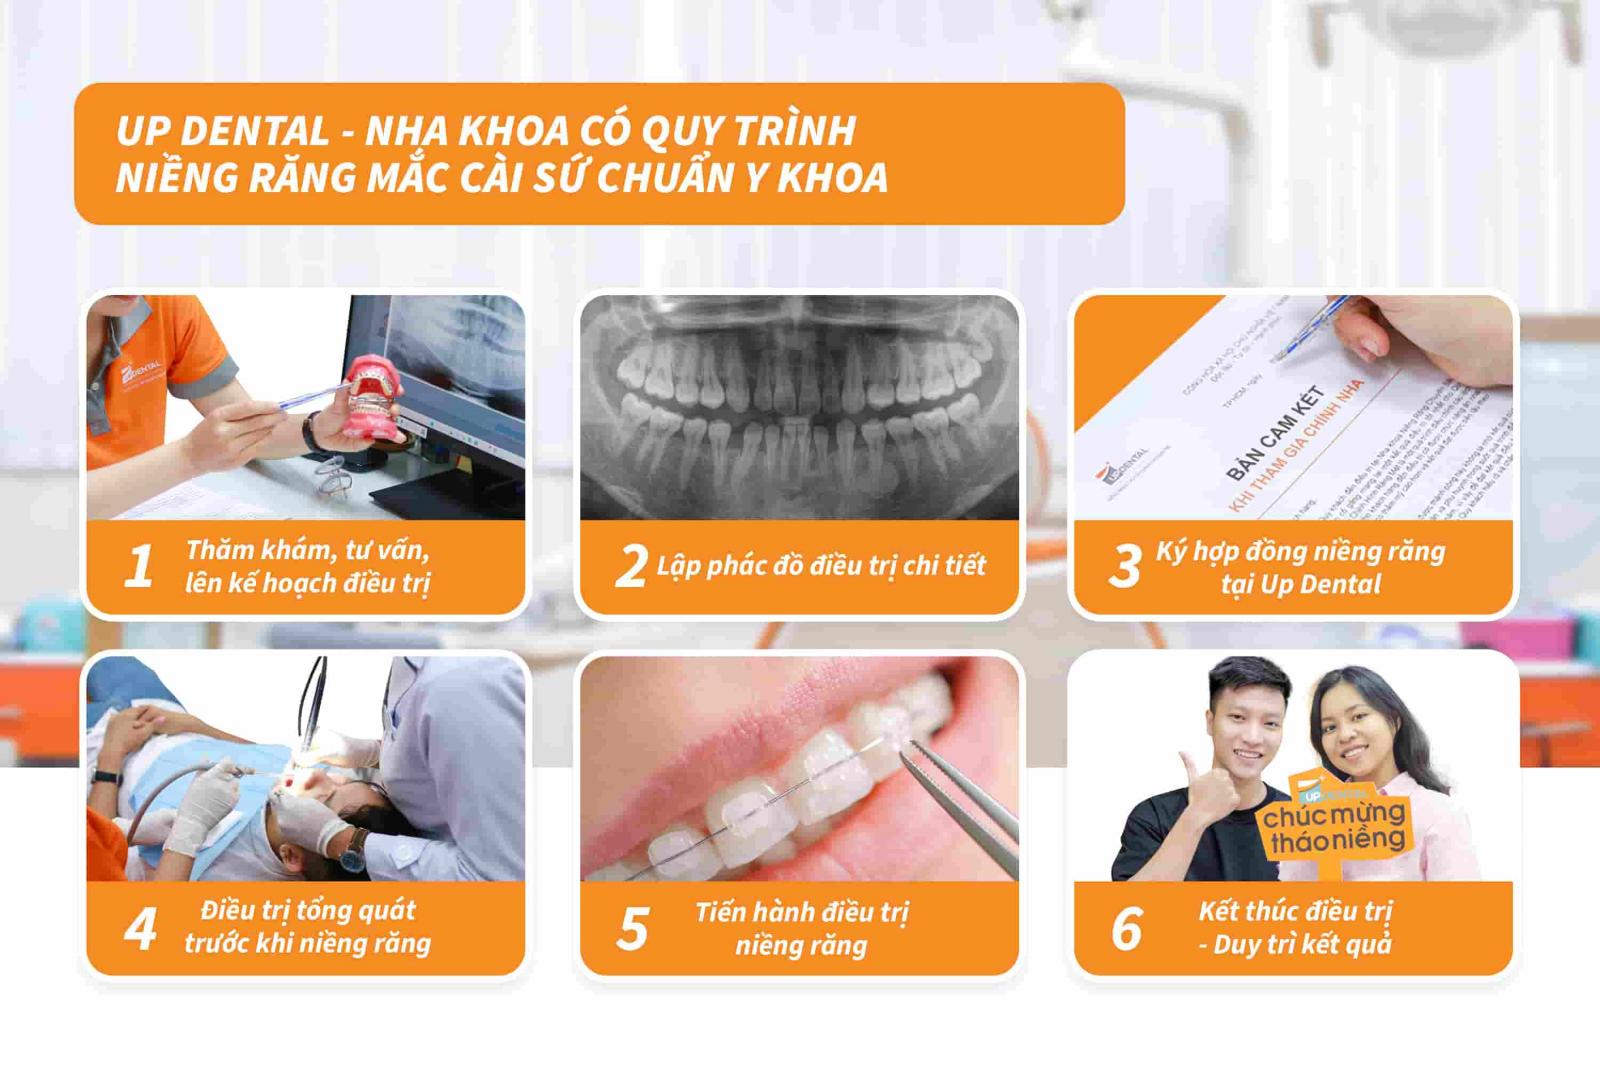 Up Dental - Nha khoa có quy trình niềng răng mắc cài sứ chuẩn Y khoa